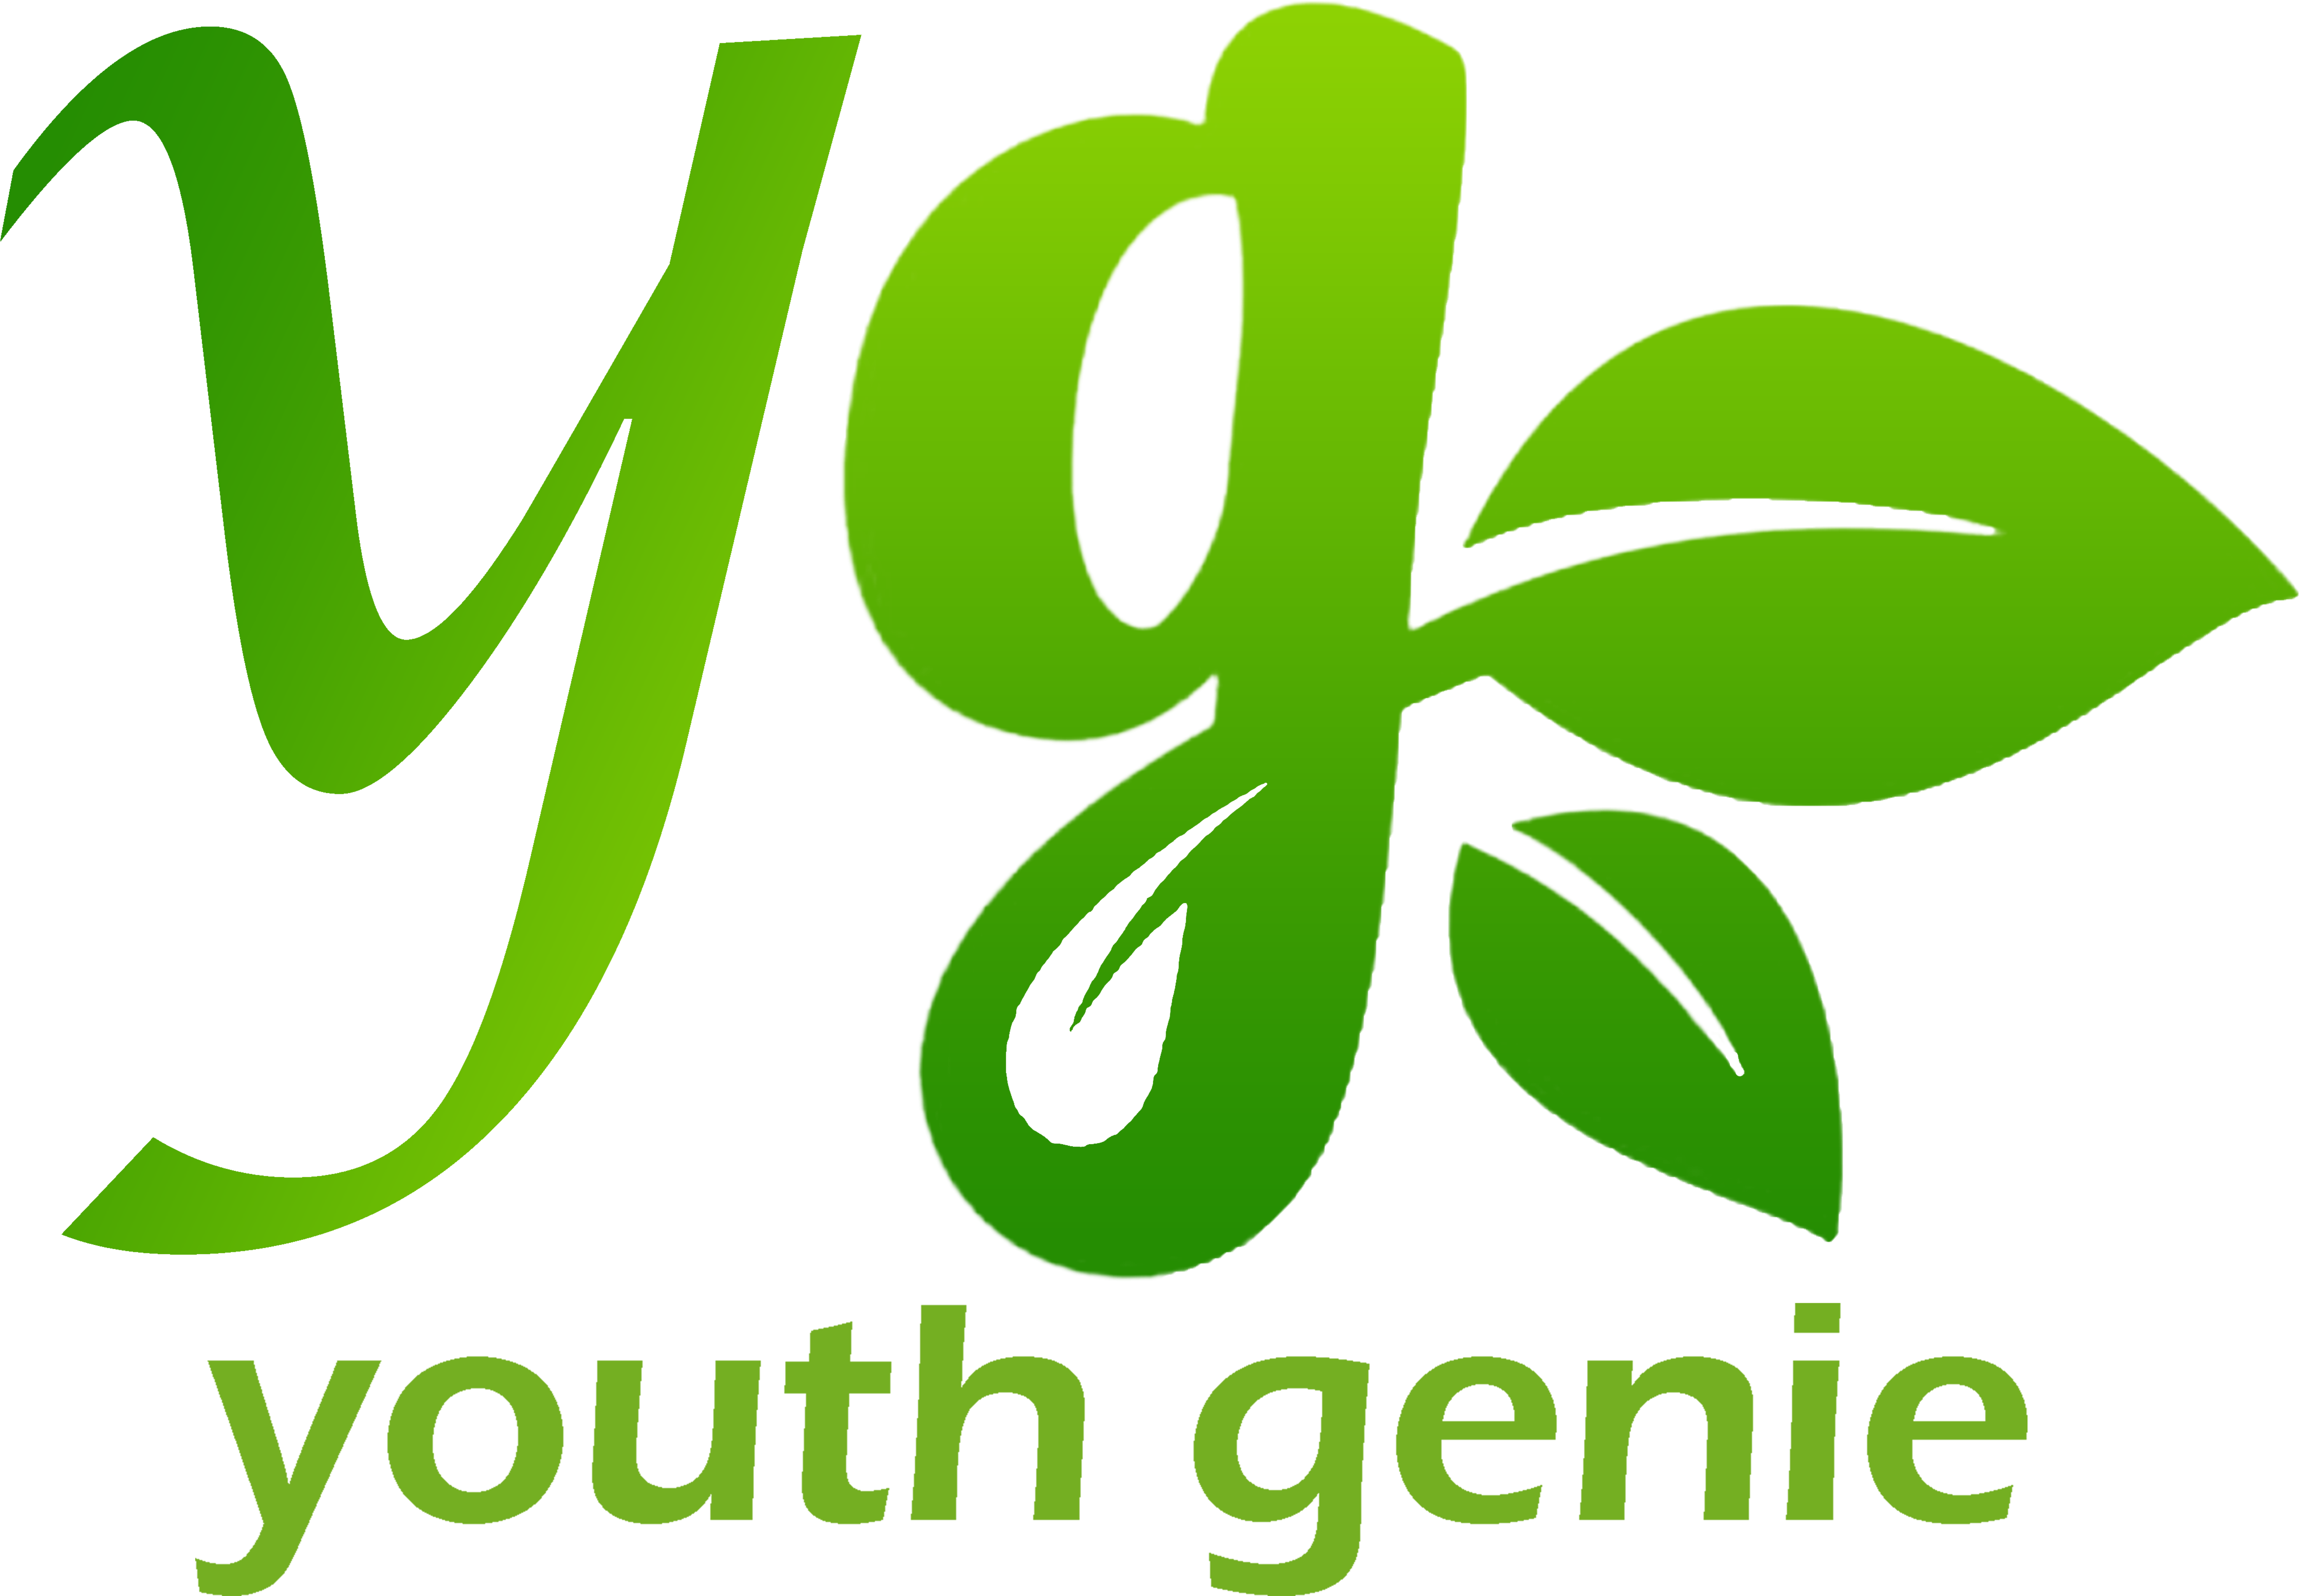 Youth Genie Youth Genie - Ohio 4 H (6000x4392)